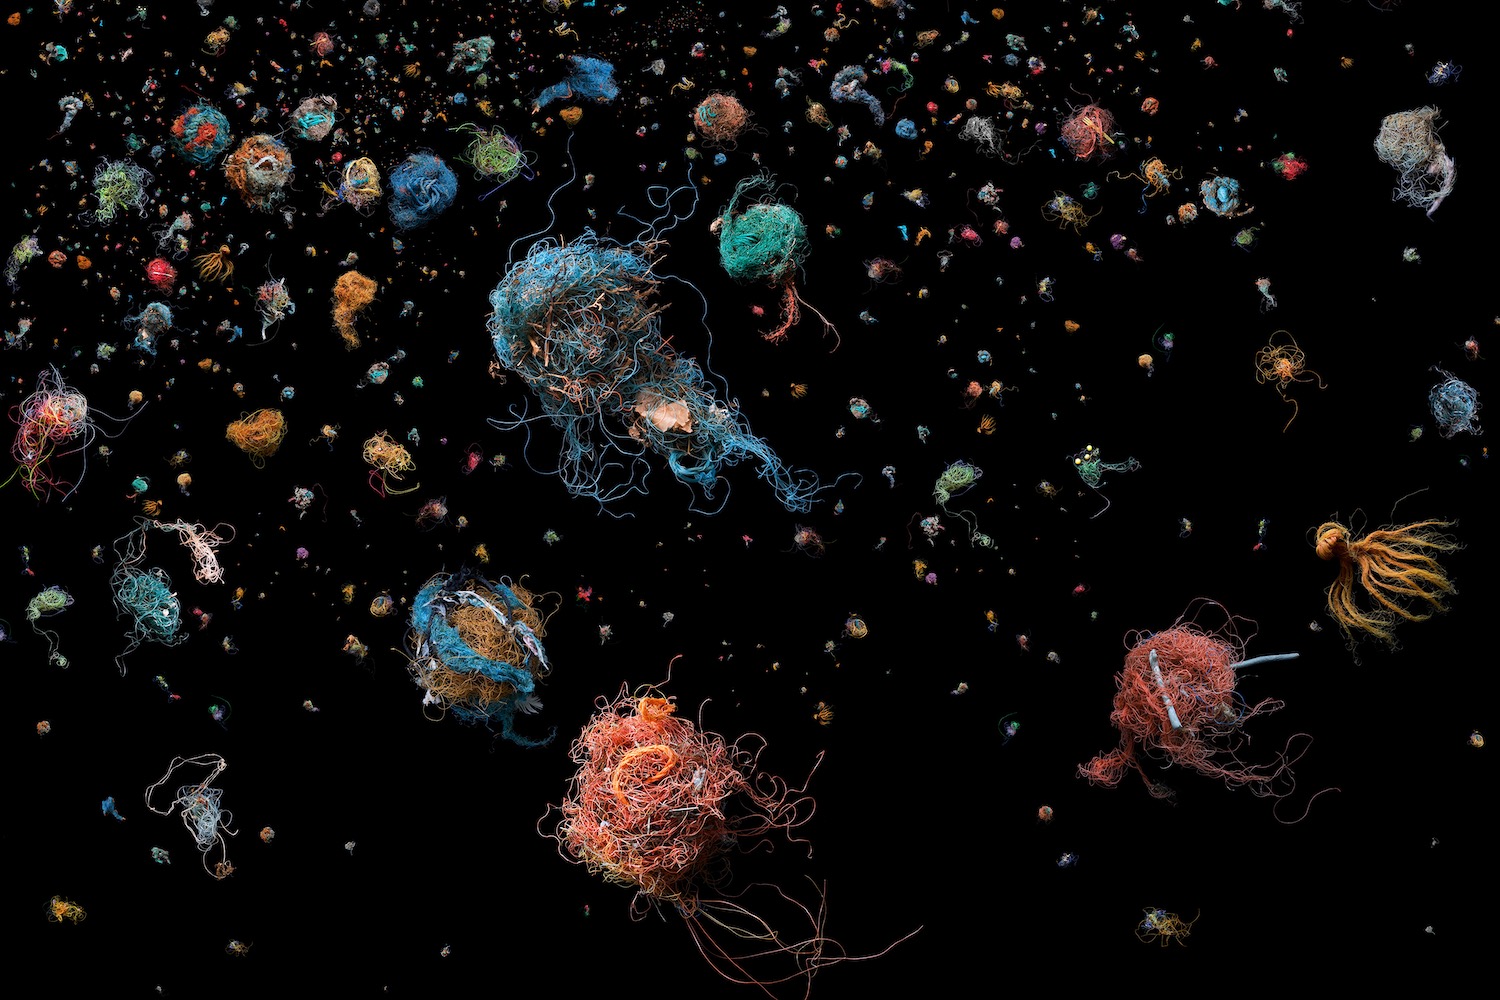 Photographie de Mandy Barker sur la pollution plastique des océans